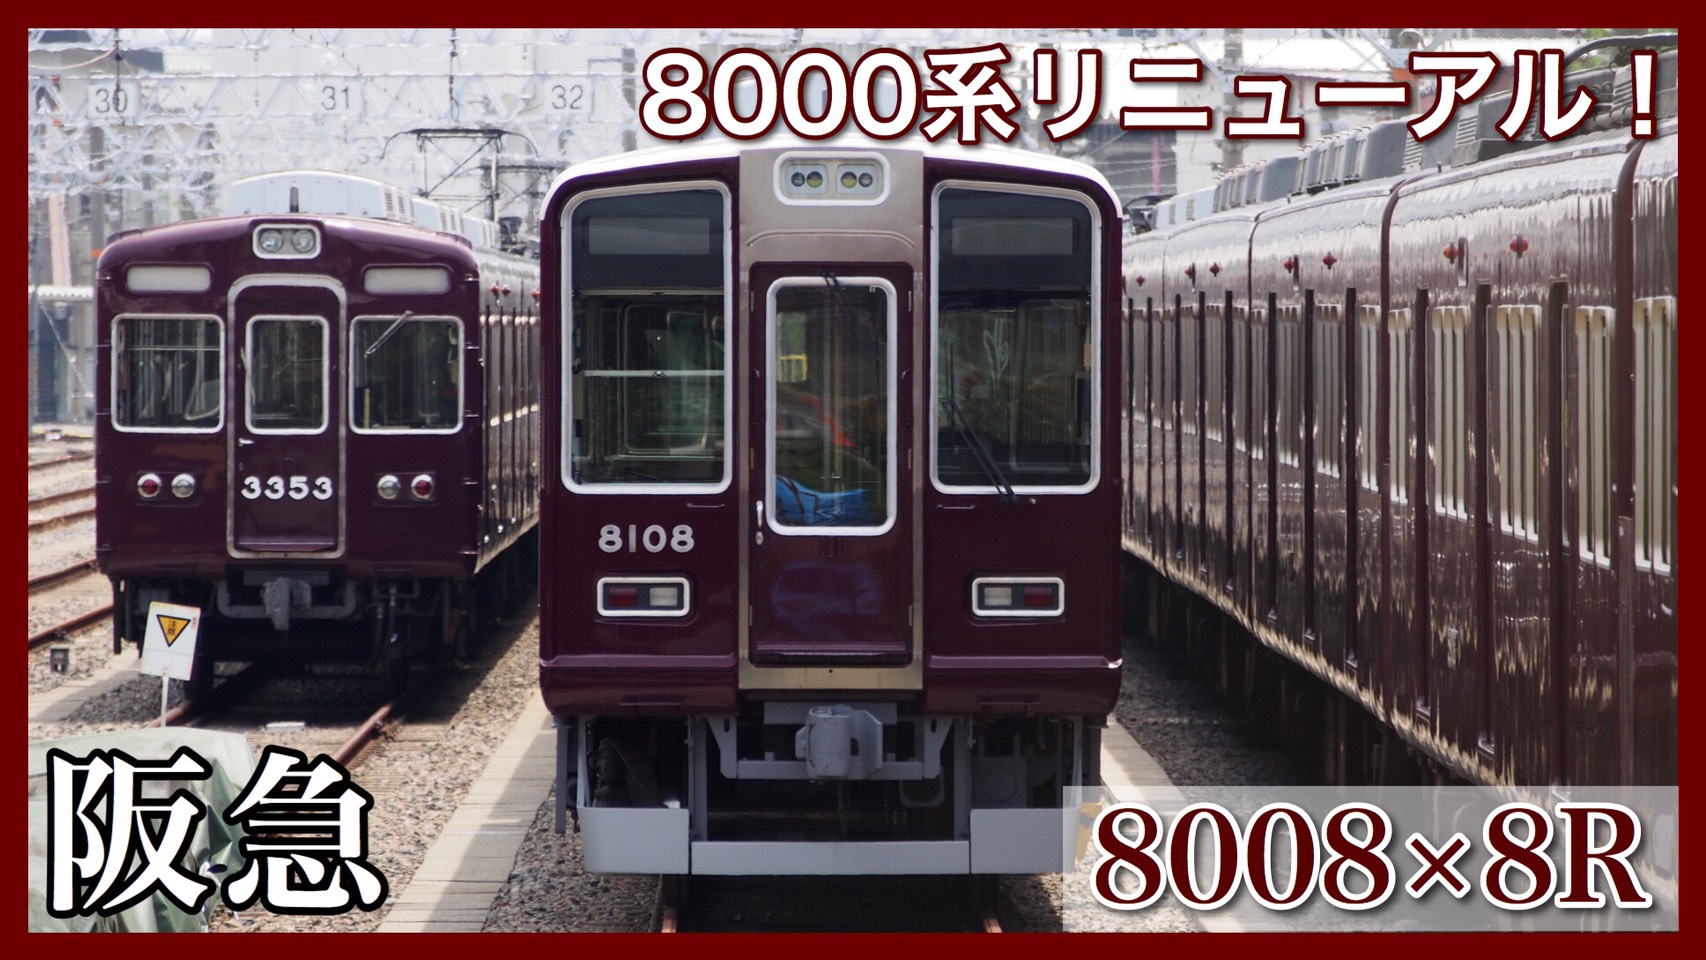 阪急電鉄 外観変化 8000系8008f工事完了 行先表示がledに 鉄道